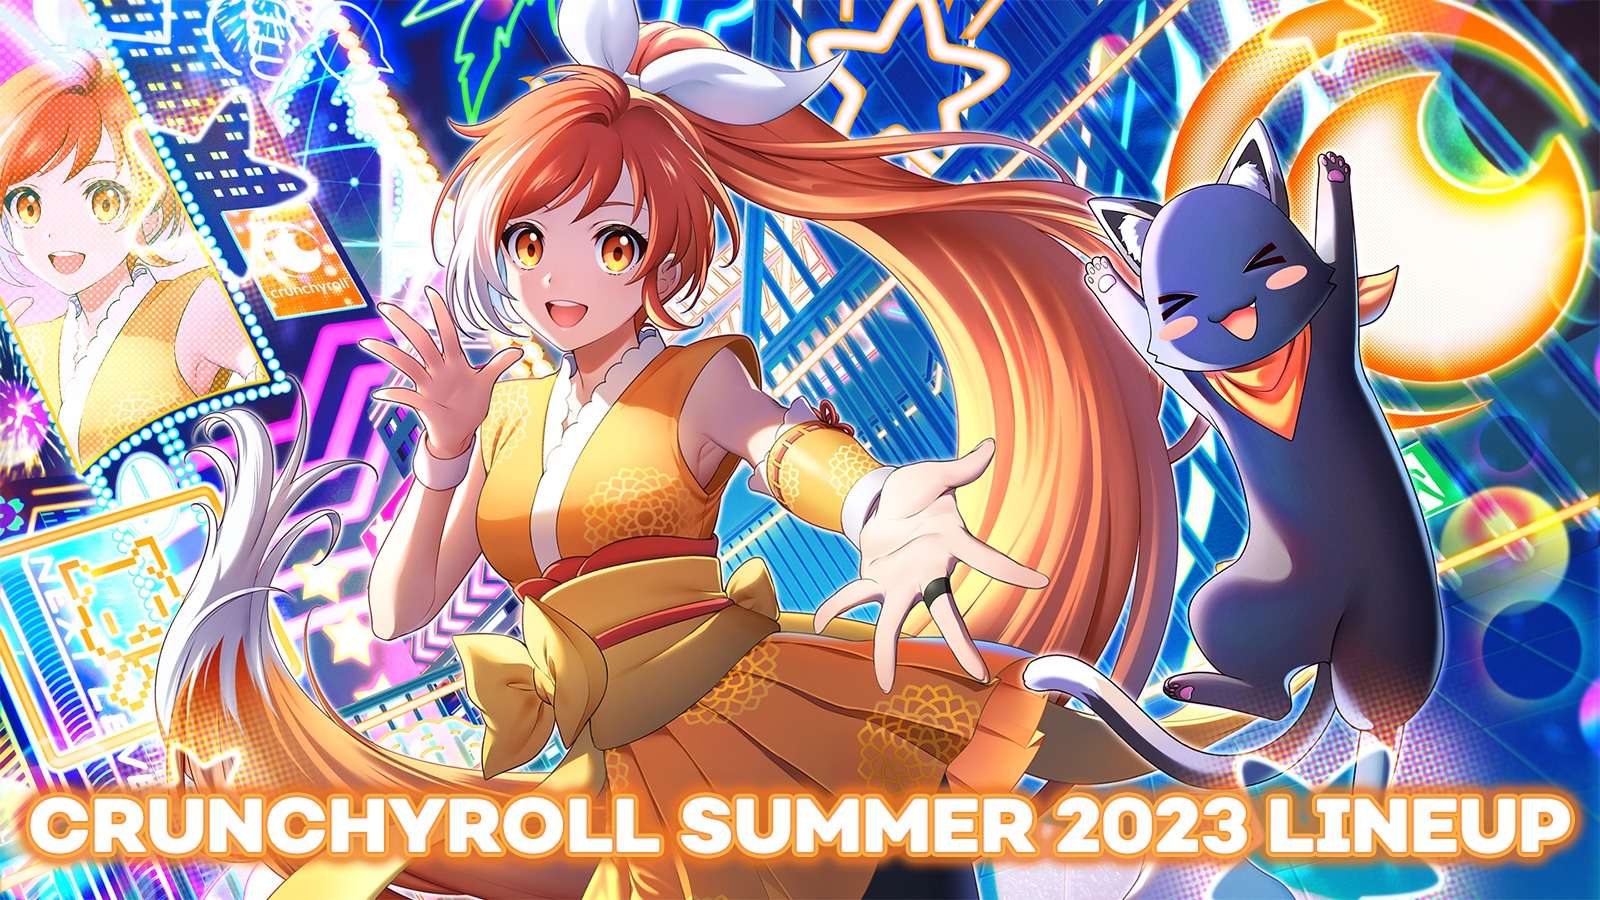 Crunchyroll summer 2023 anime schedule poster